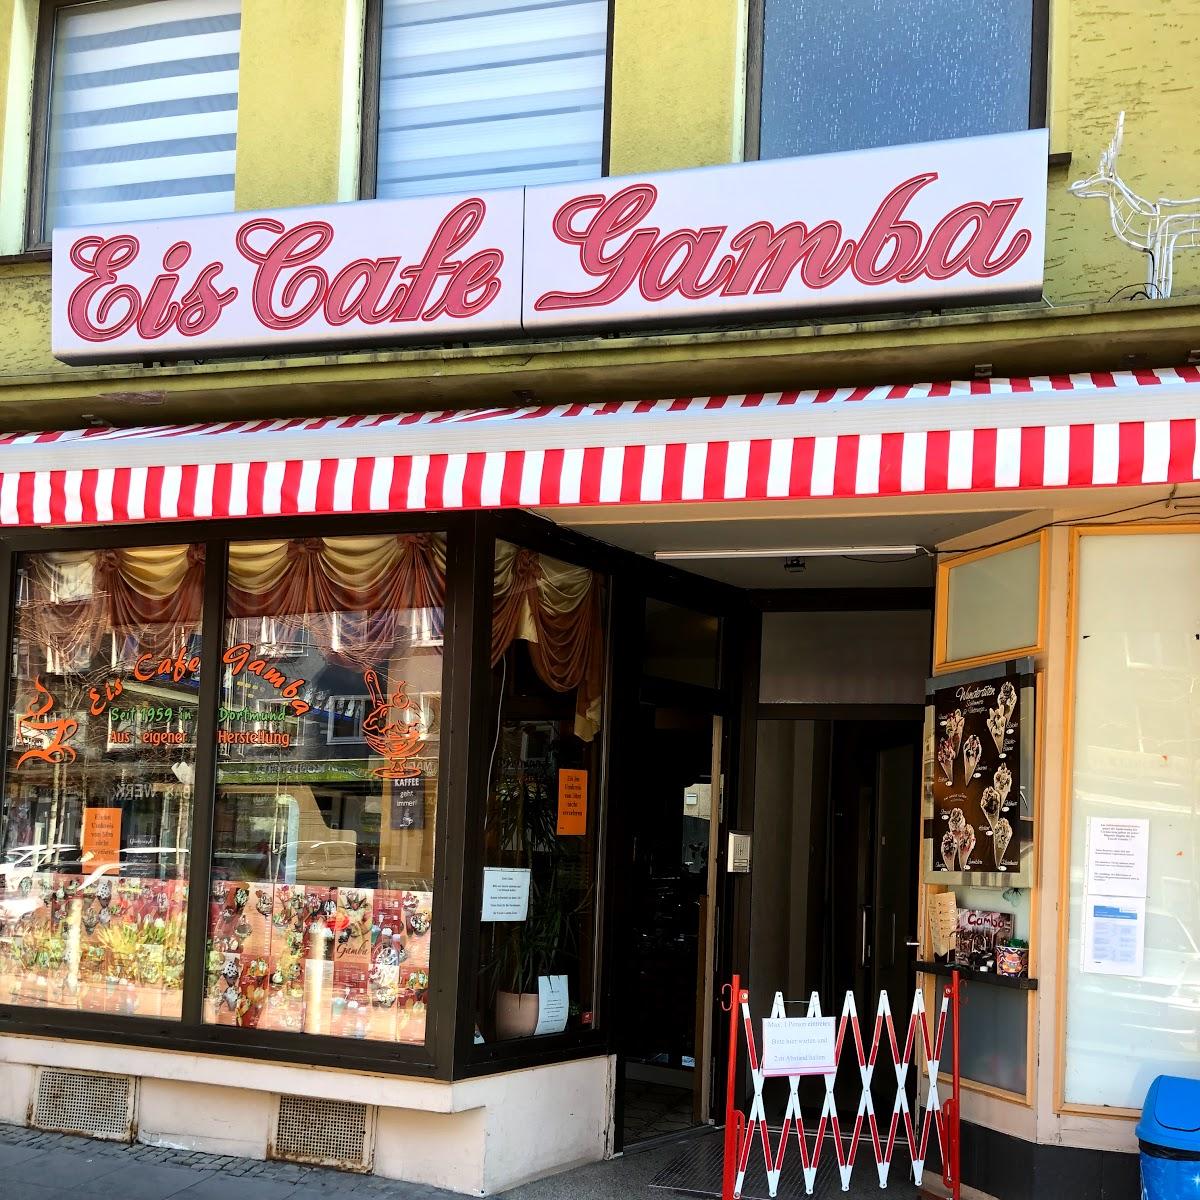 Restaurant "Eiscafe Gamba" in Dortmund